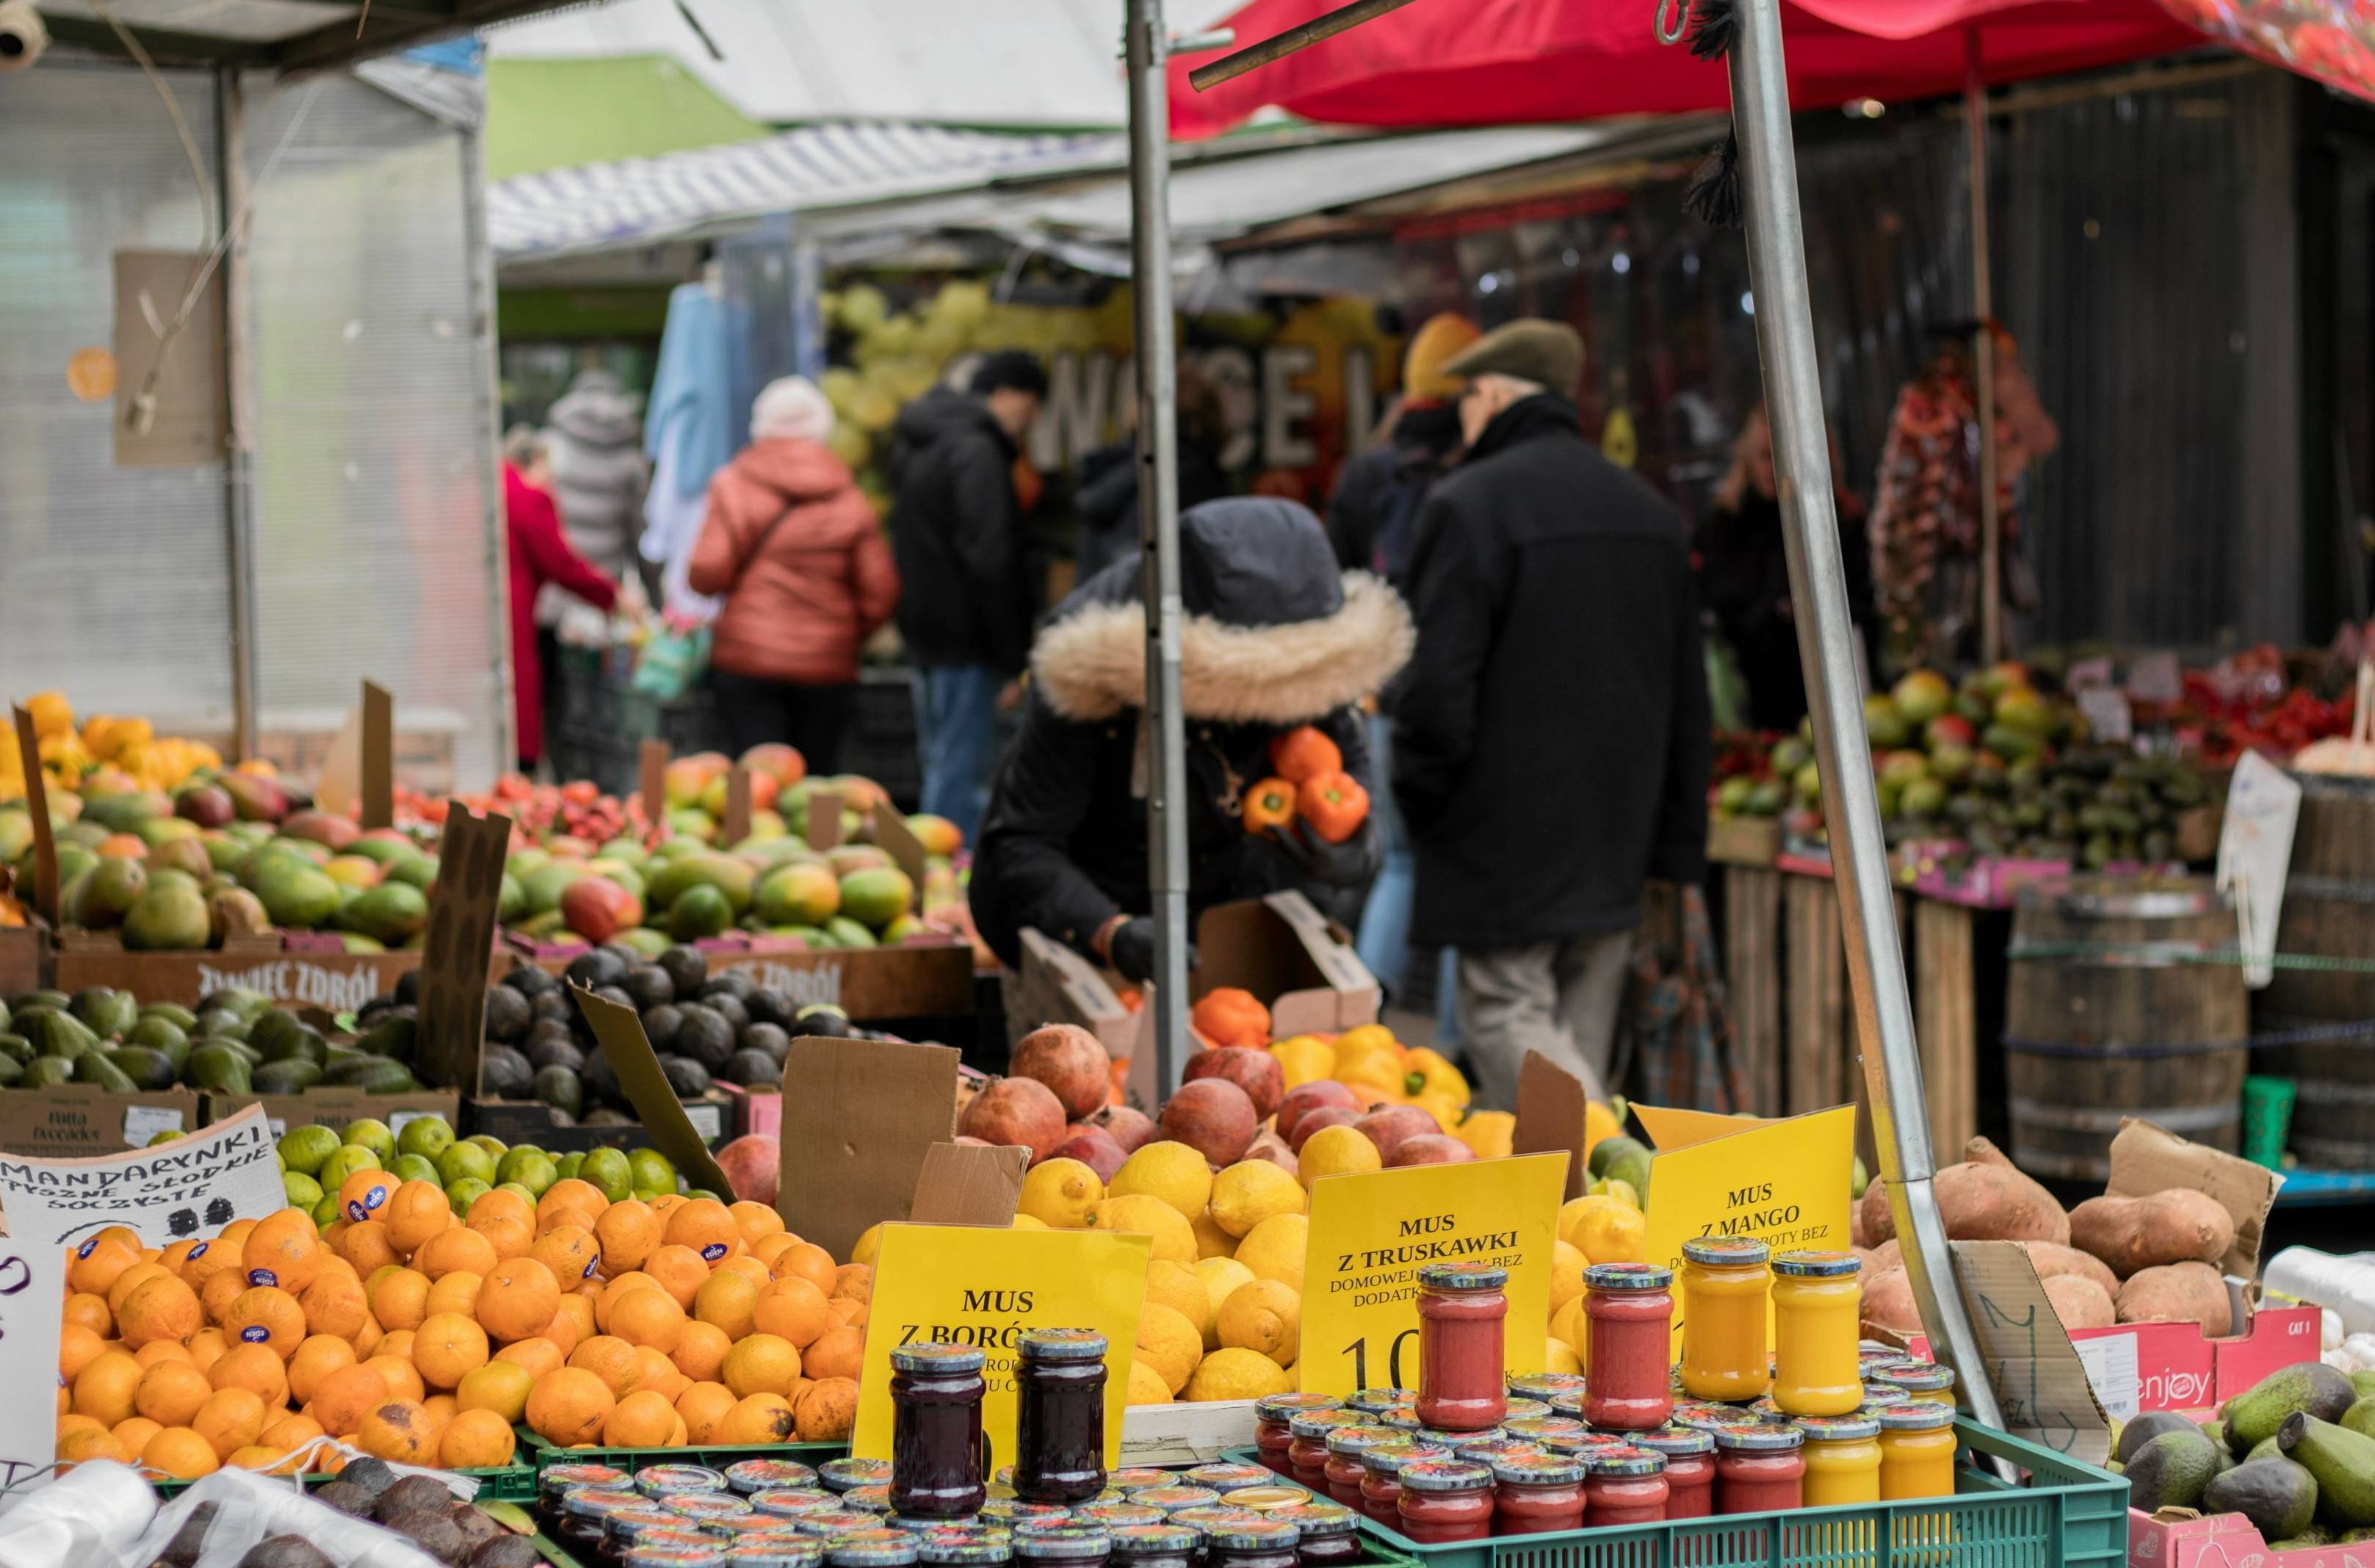 Kobieta pochylona nad owocami i przetworami na bazarze, patrzy na ceny